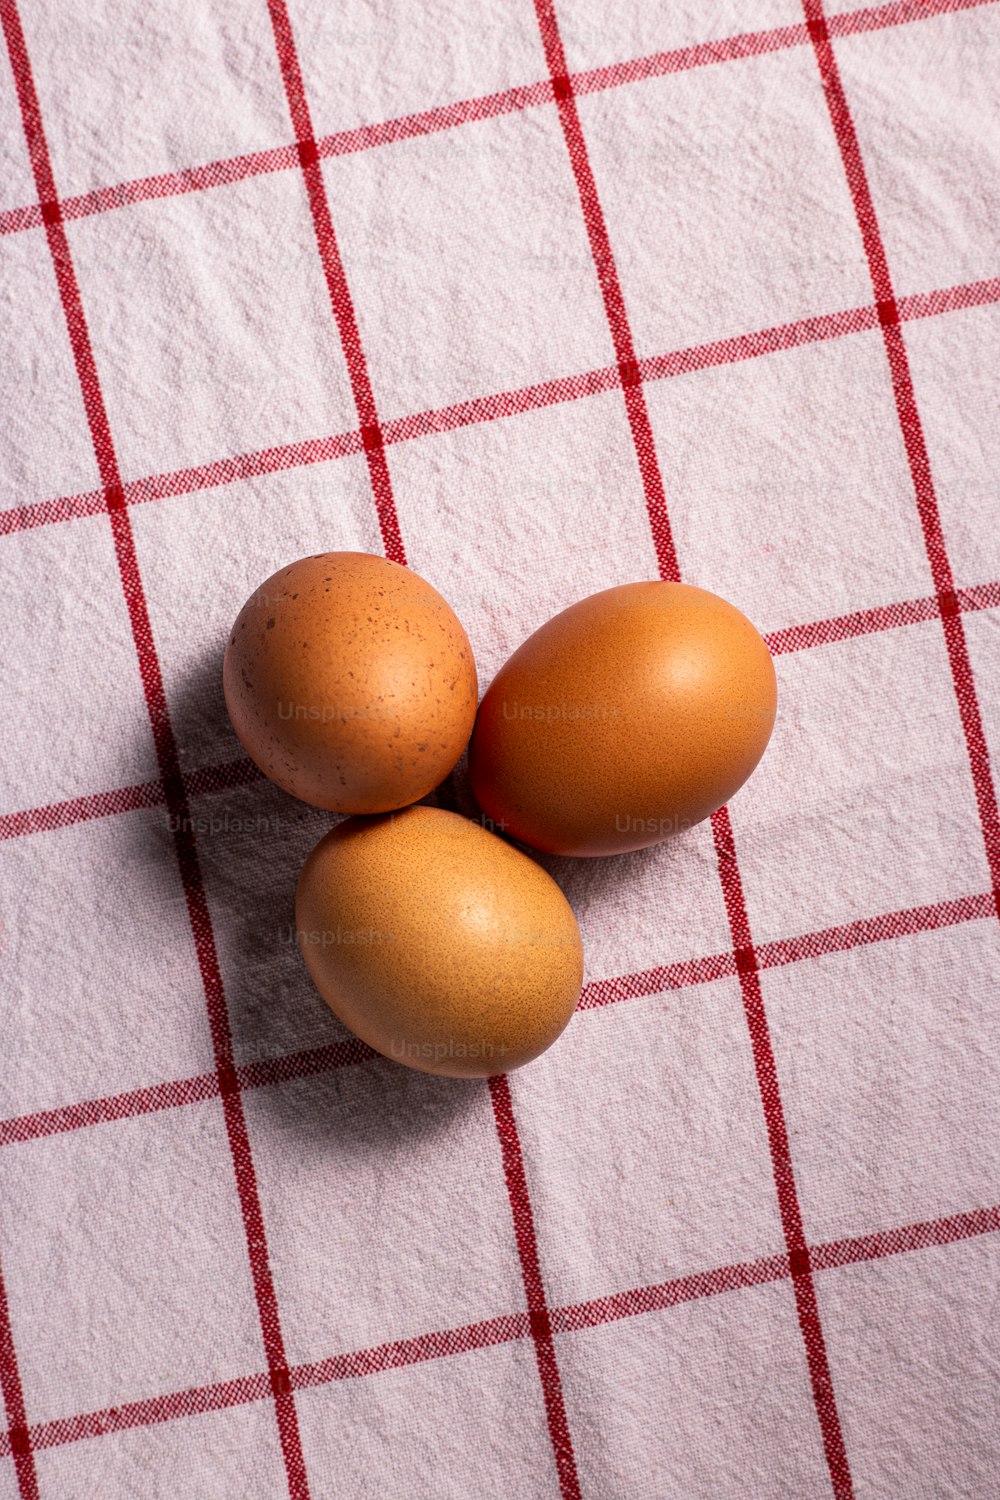 빨간색과 흰색 체크 무늬 식탁�보에 갈색 달걀 3 개